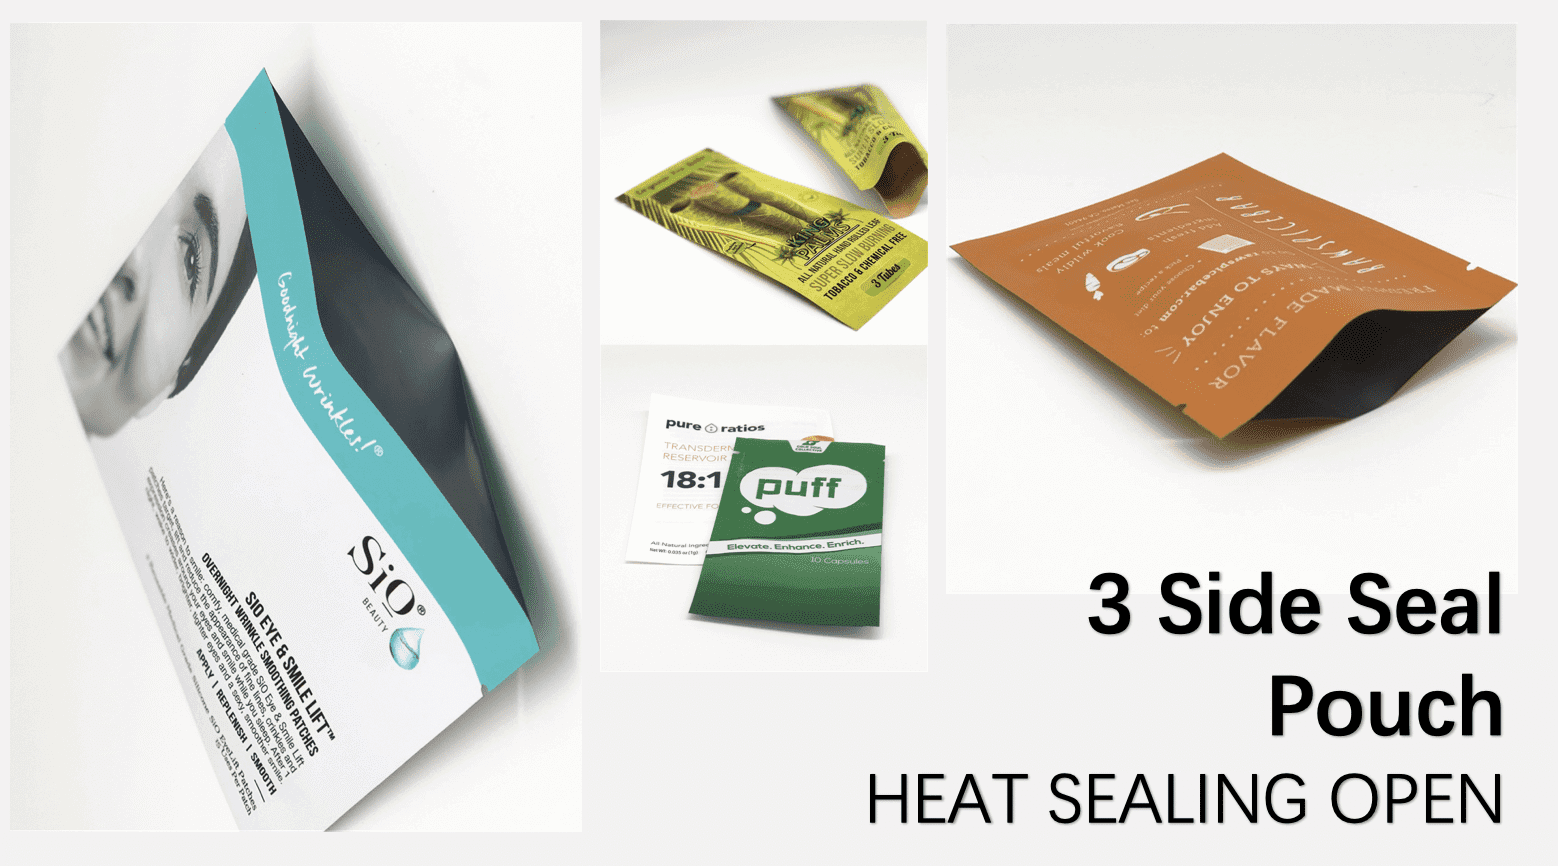 3 side seal pouch heat sealing open